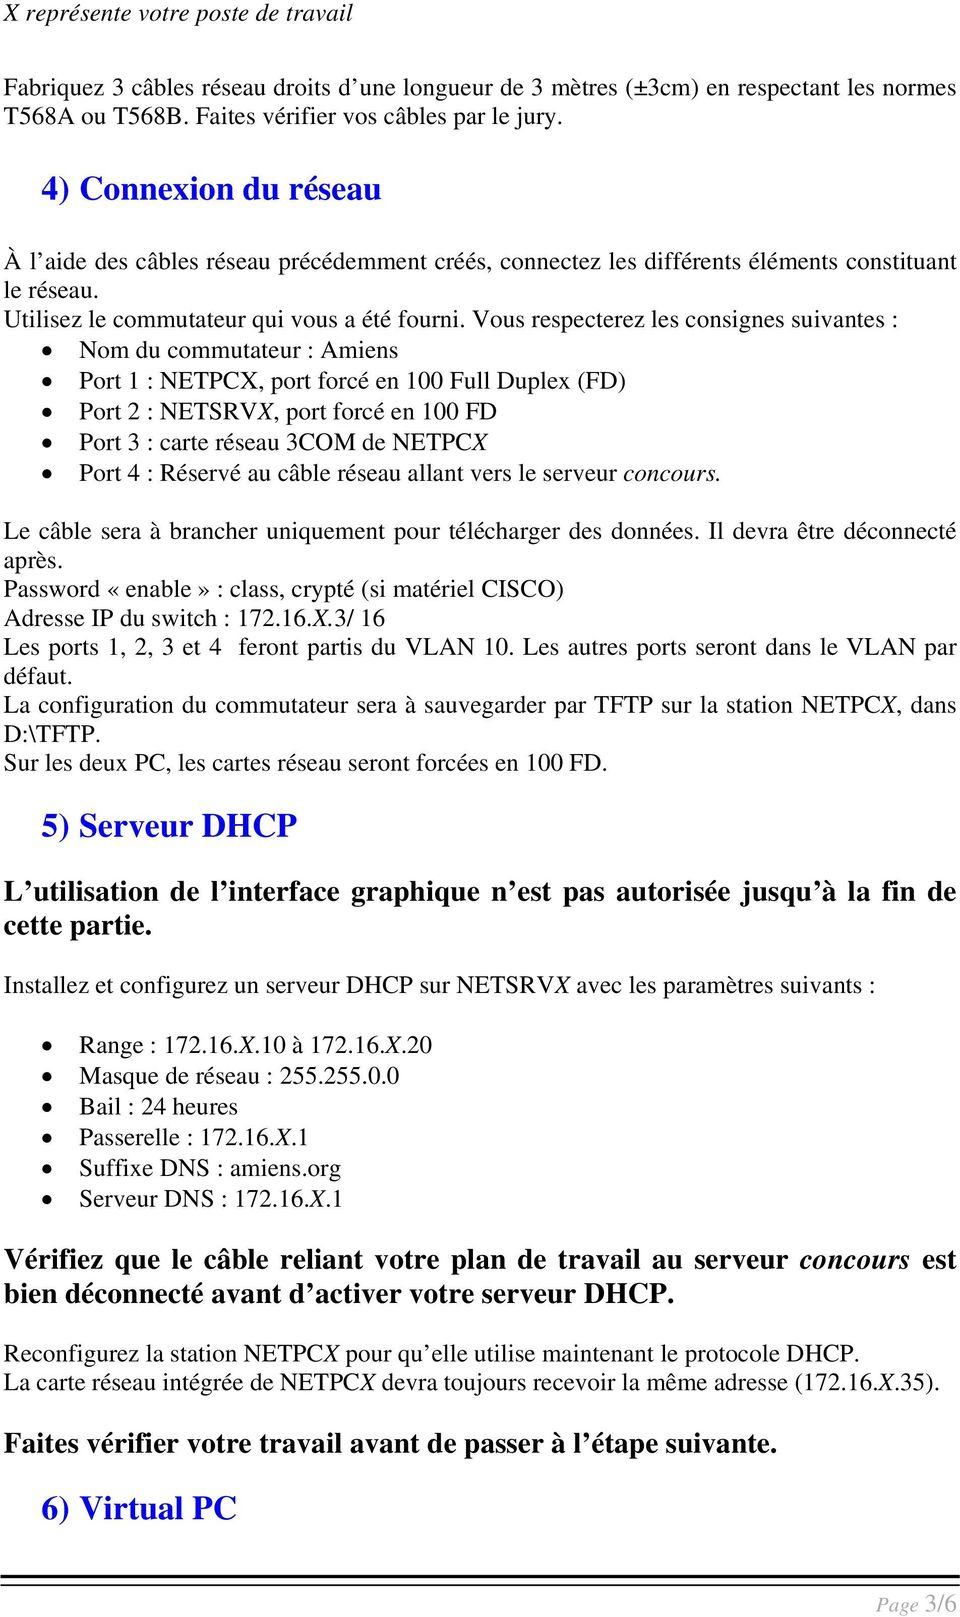 Vous respecterez les consignes suivantes : Nom du commutateur : Amiens Port 1 : NETPCX, port forcé en 100 Full Duplex (FD) Port 2 : NETSRVX, port forcé en 100 FD Port 3 : c arte réseau 3COM de NETPCX